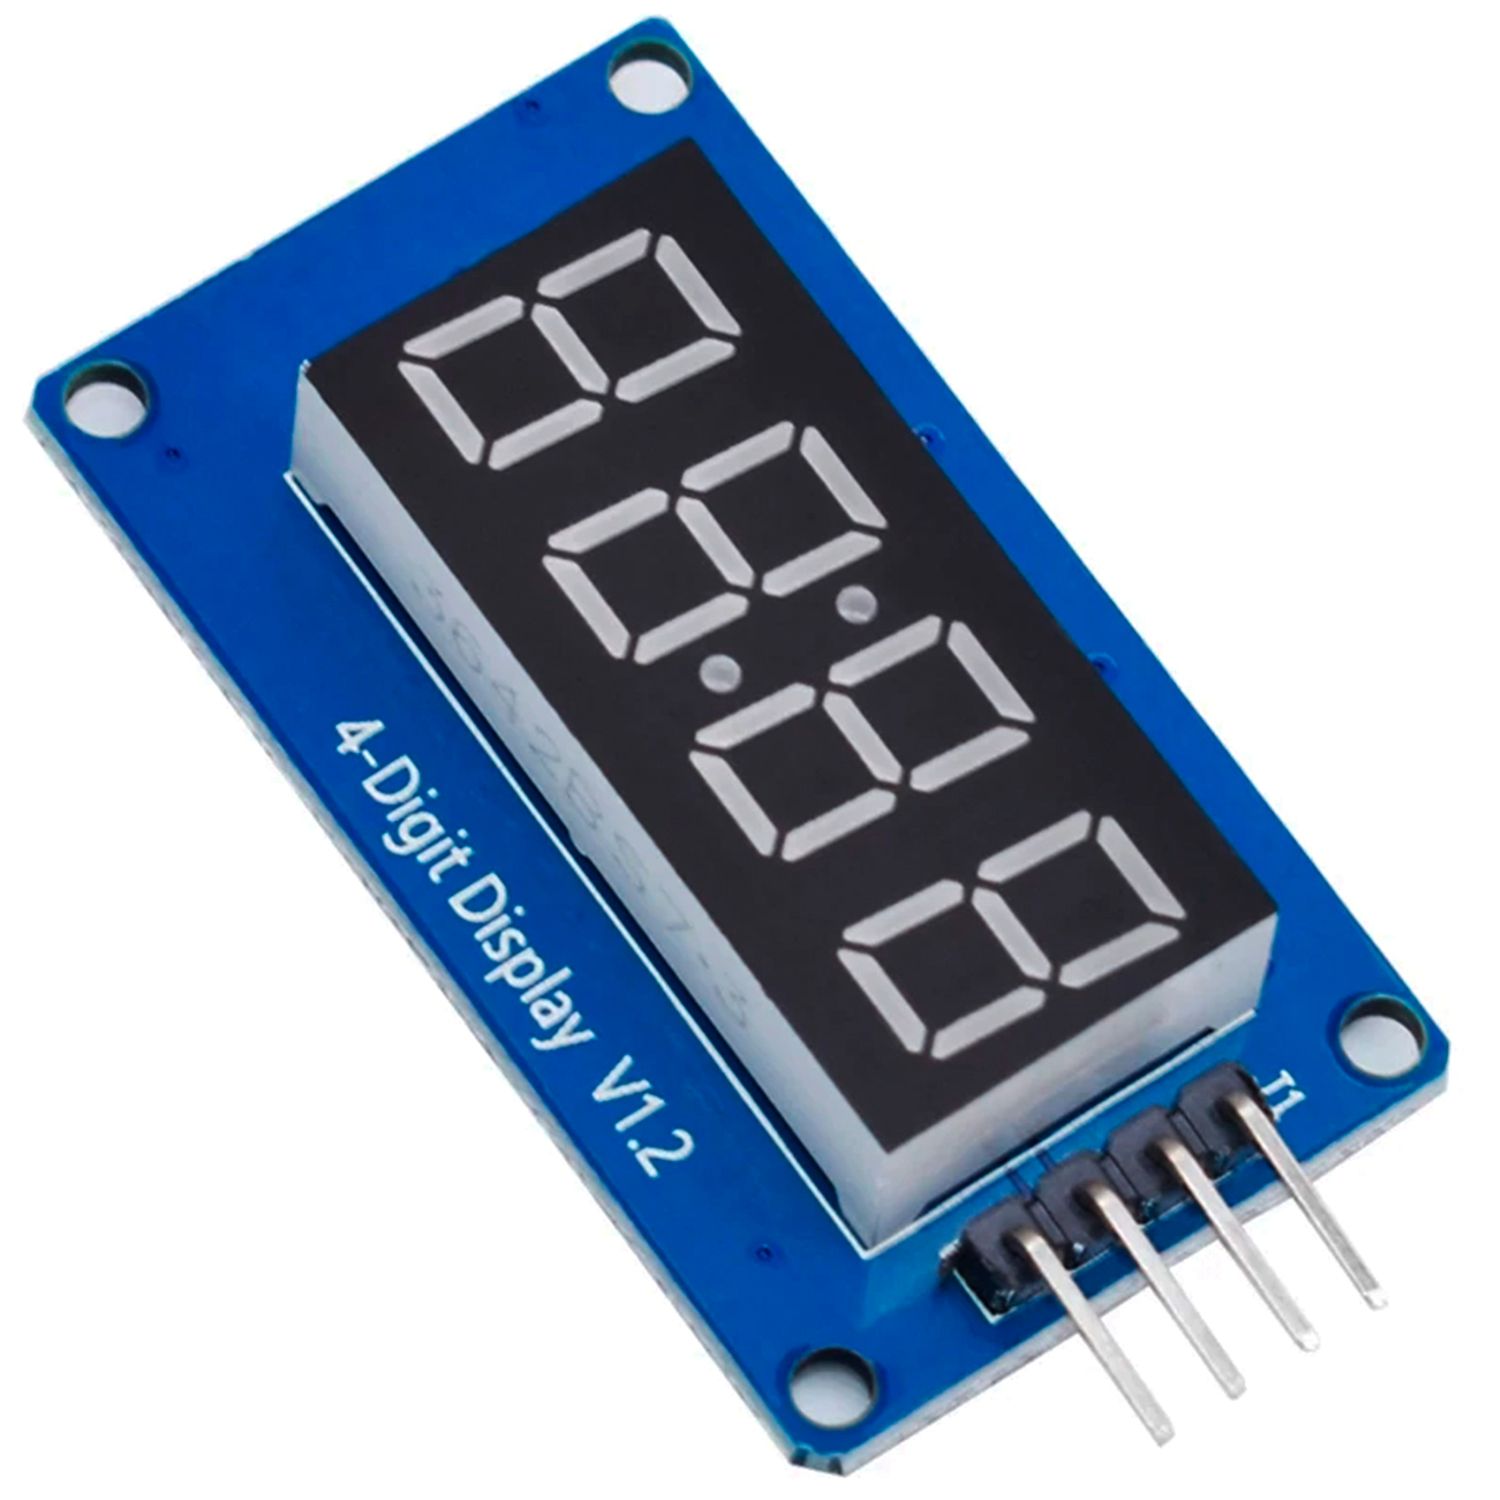 LED-индикатор семисегментный 4-разрядный с I2C драйвером TM1637